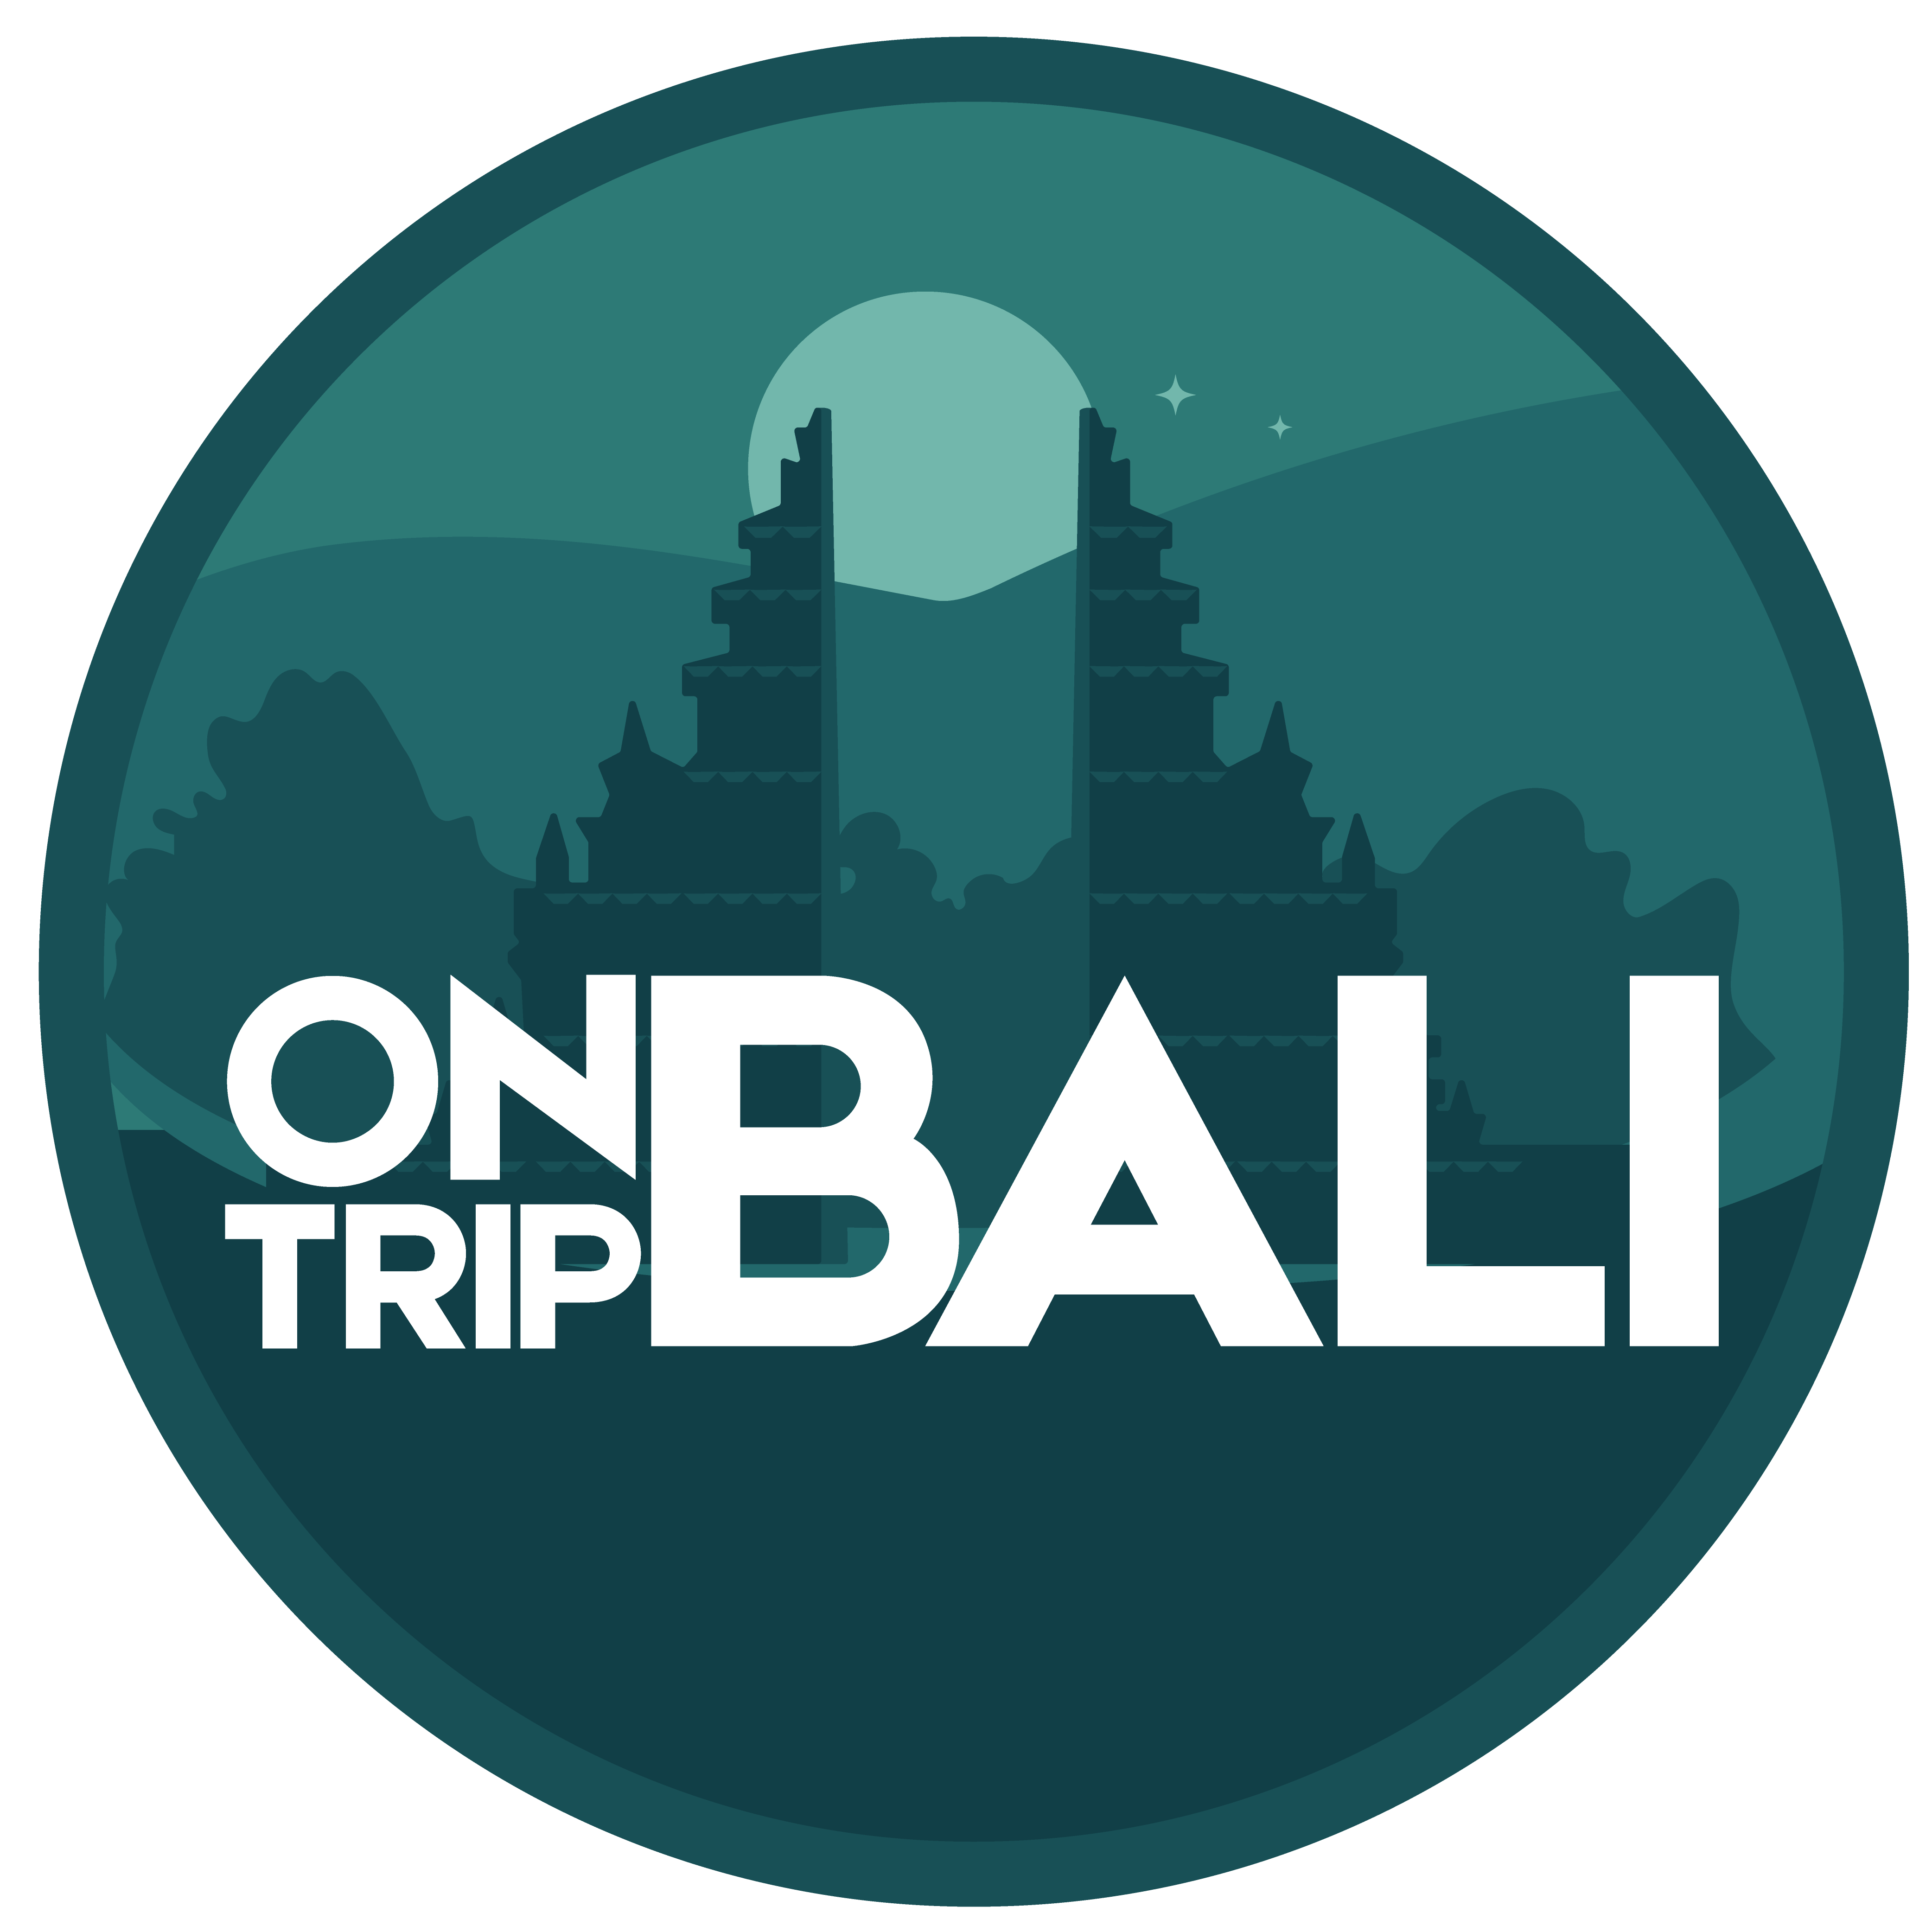 OnTripBali – TOUR AND RENTCAR SERVICE